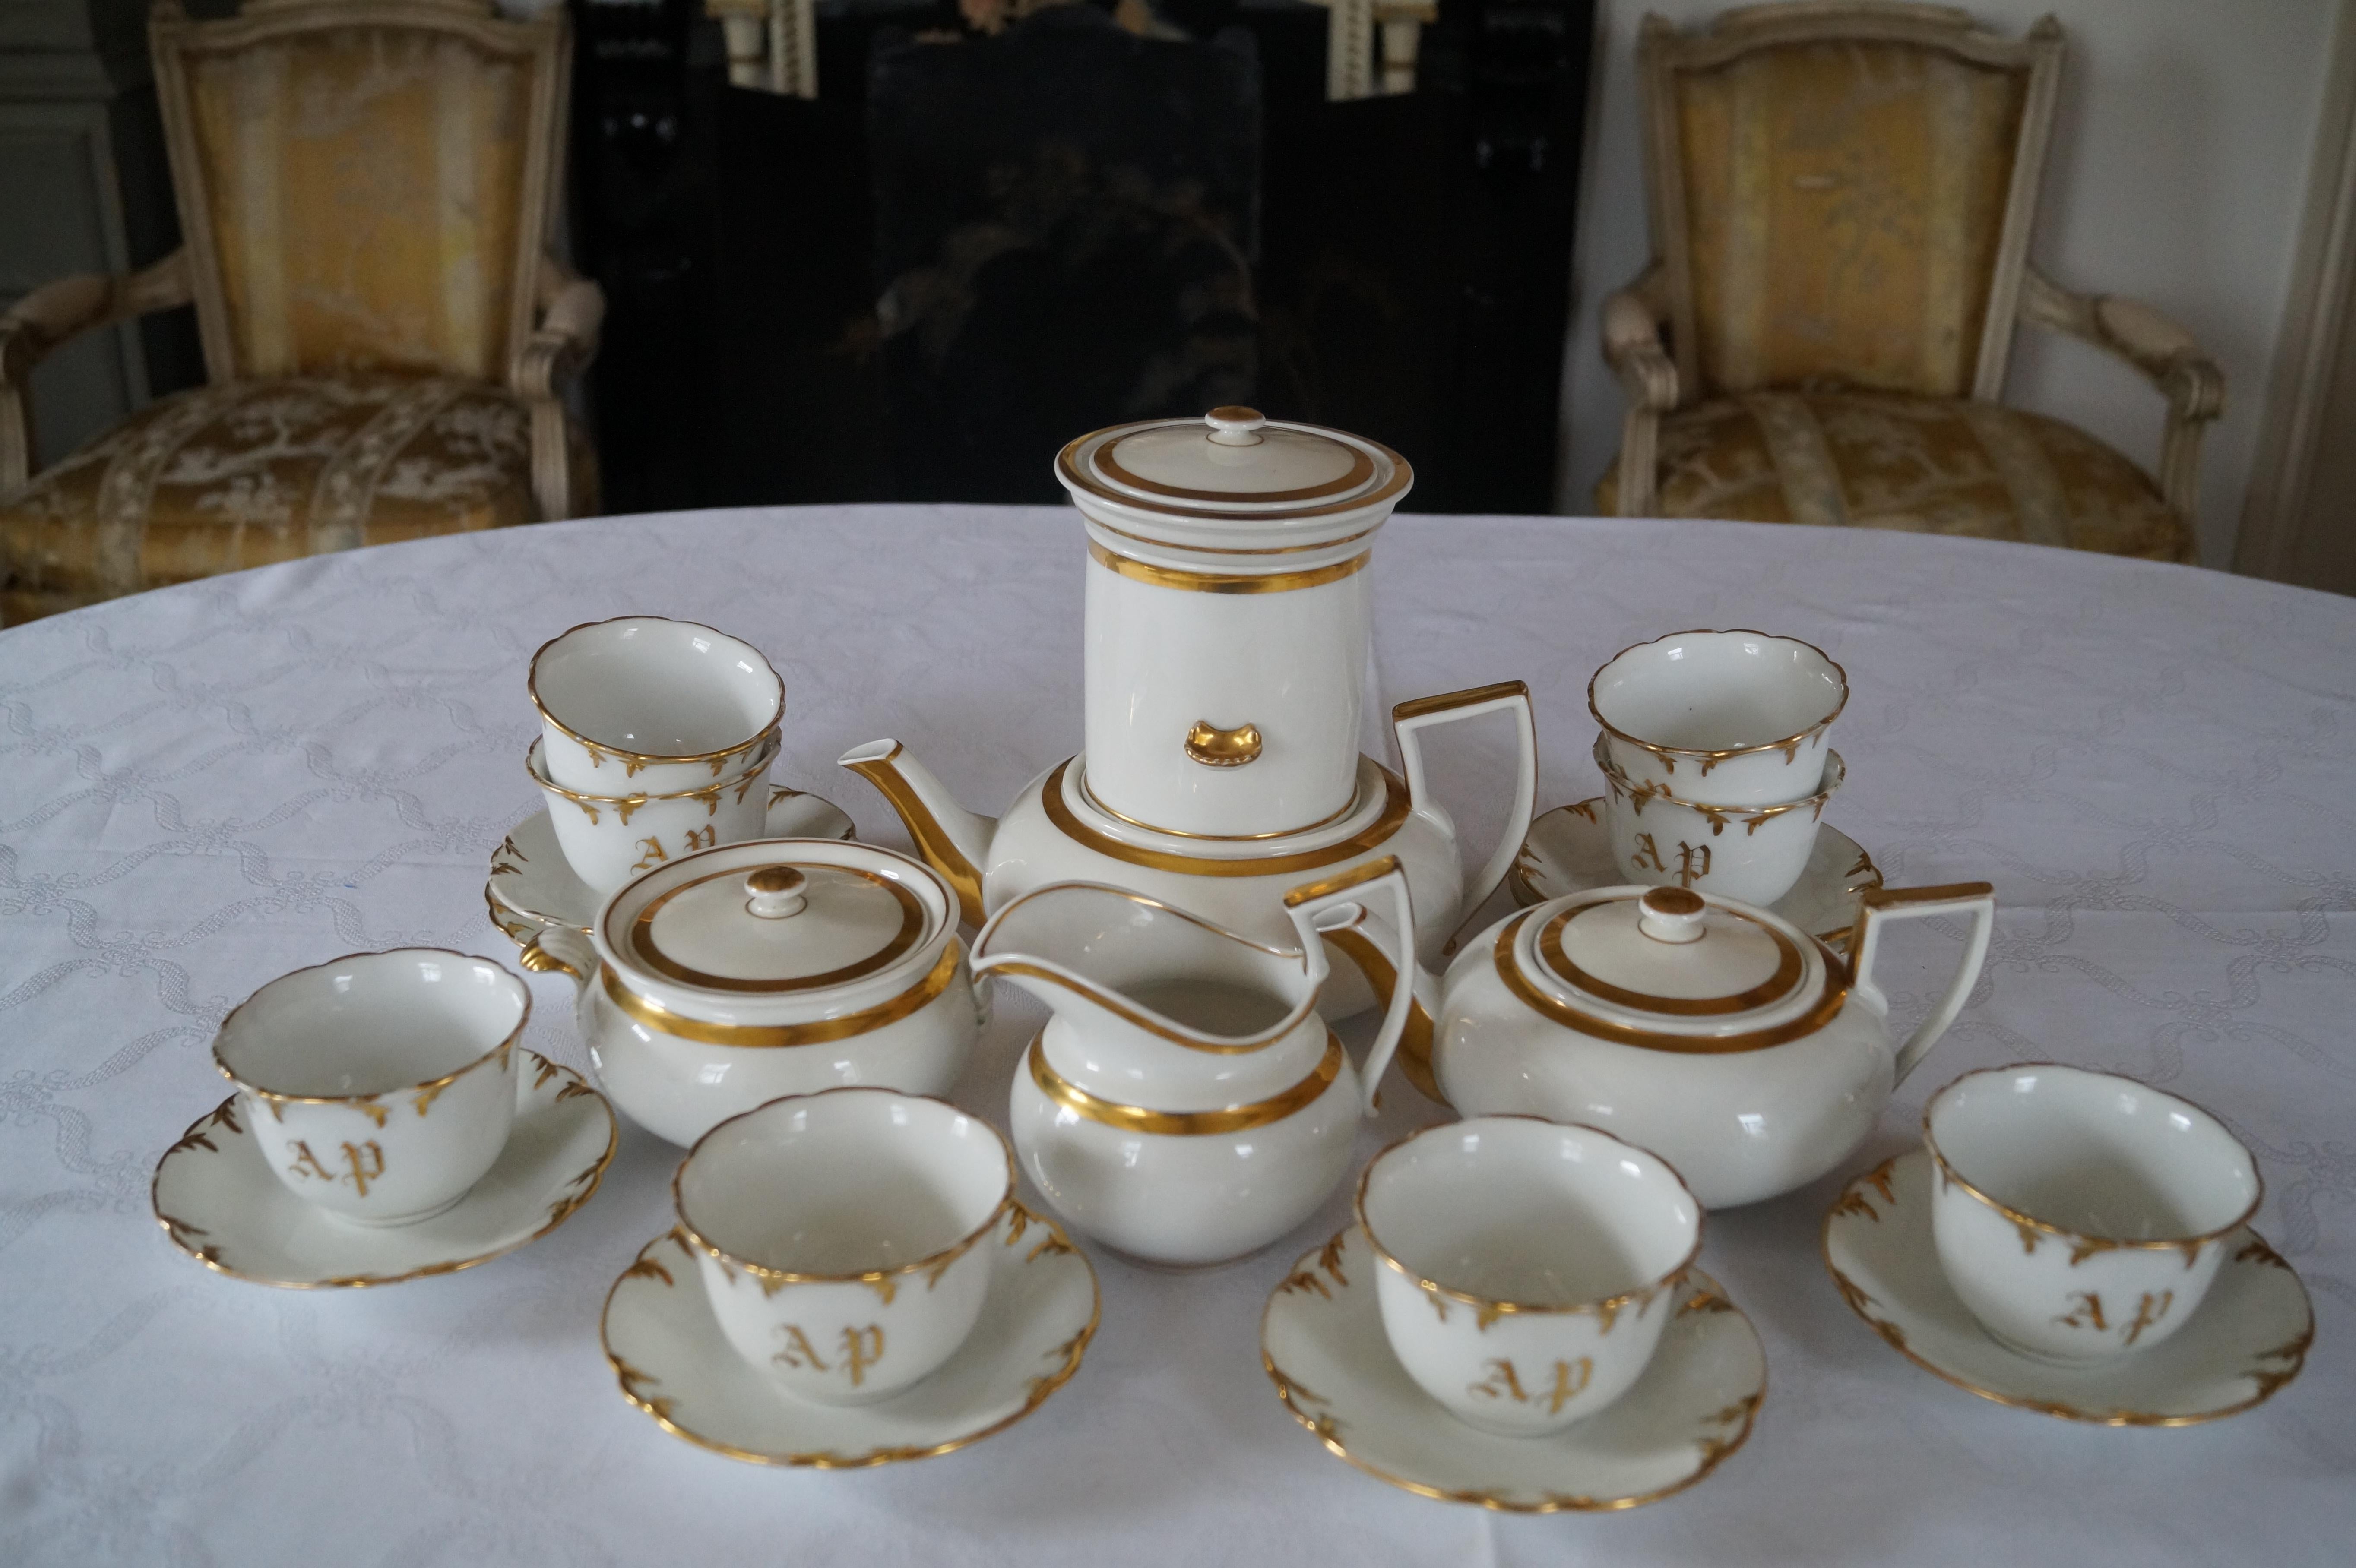 Magnifique, Rare modèle de forme, Service à café thé en porcelaine de Paris ancien avec attache filtre à café et tasses et soucoupes avec monogramme !

Le filtre à café ne convient qu'aux grandes cafetières (théières). Habituellement, le thé n'est